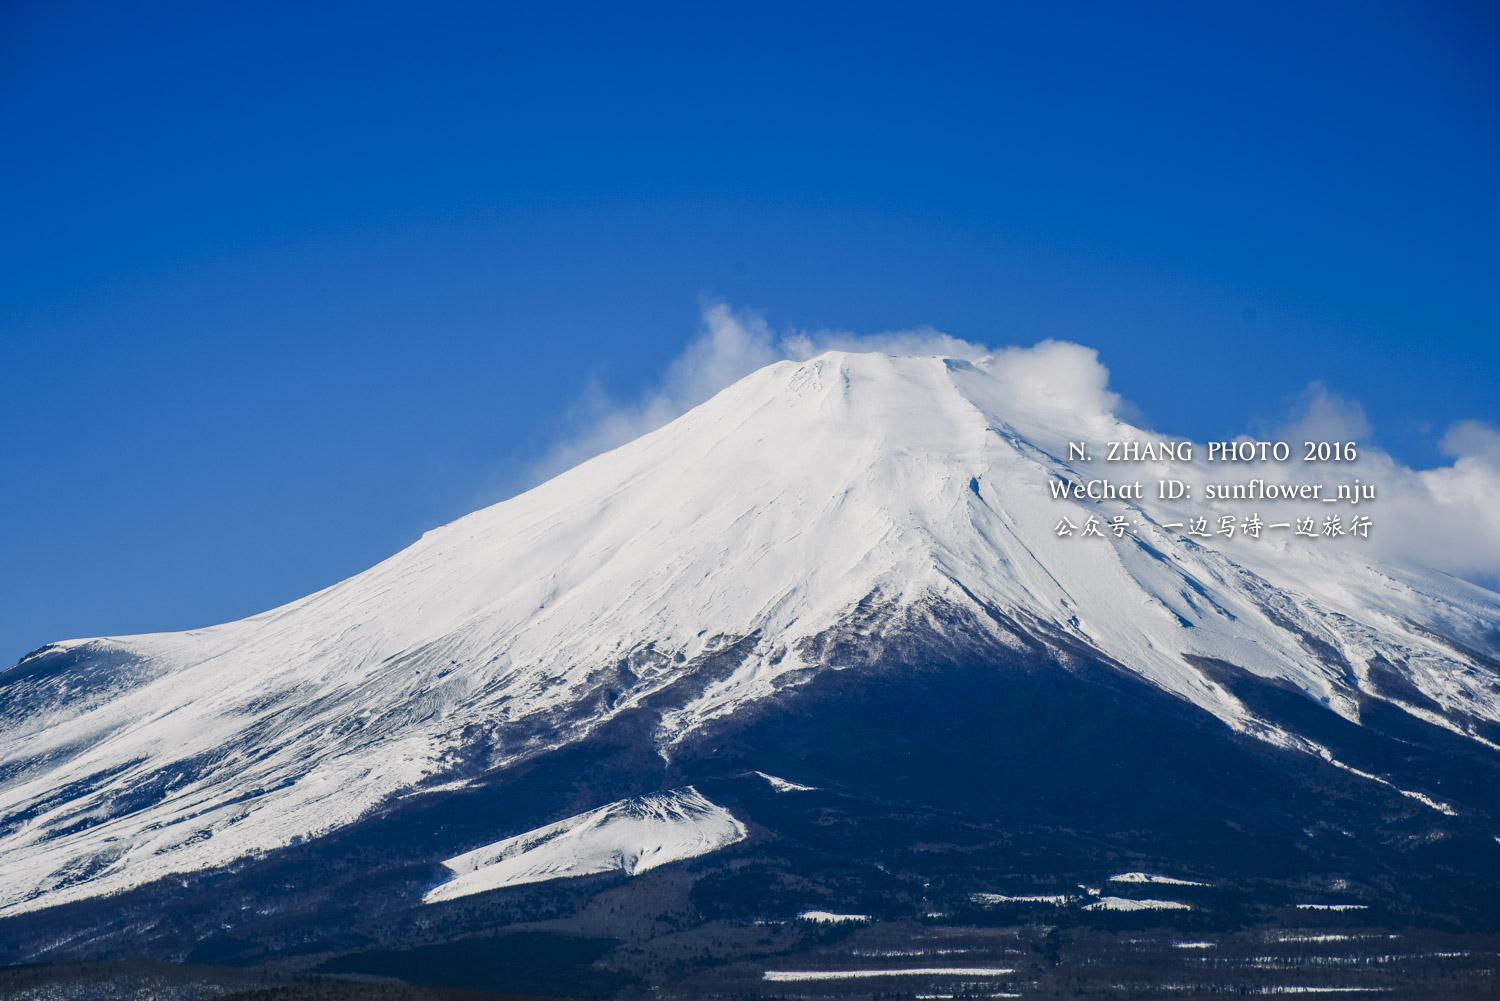 直到去年,师妹发来几张白雪覆盖的富士山照片,一下子让人神魂颠倒